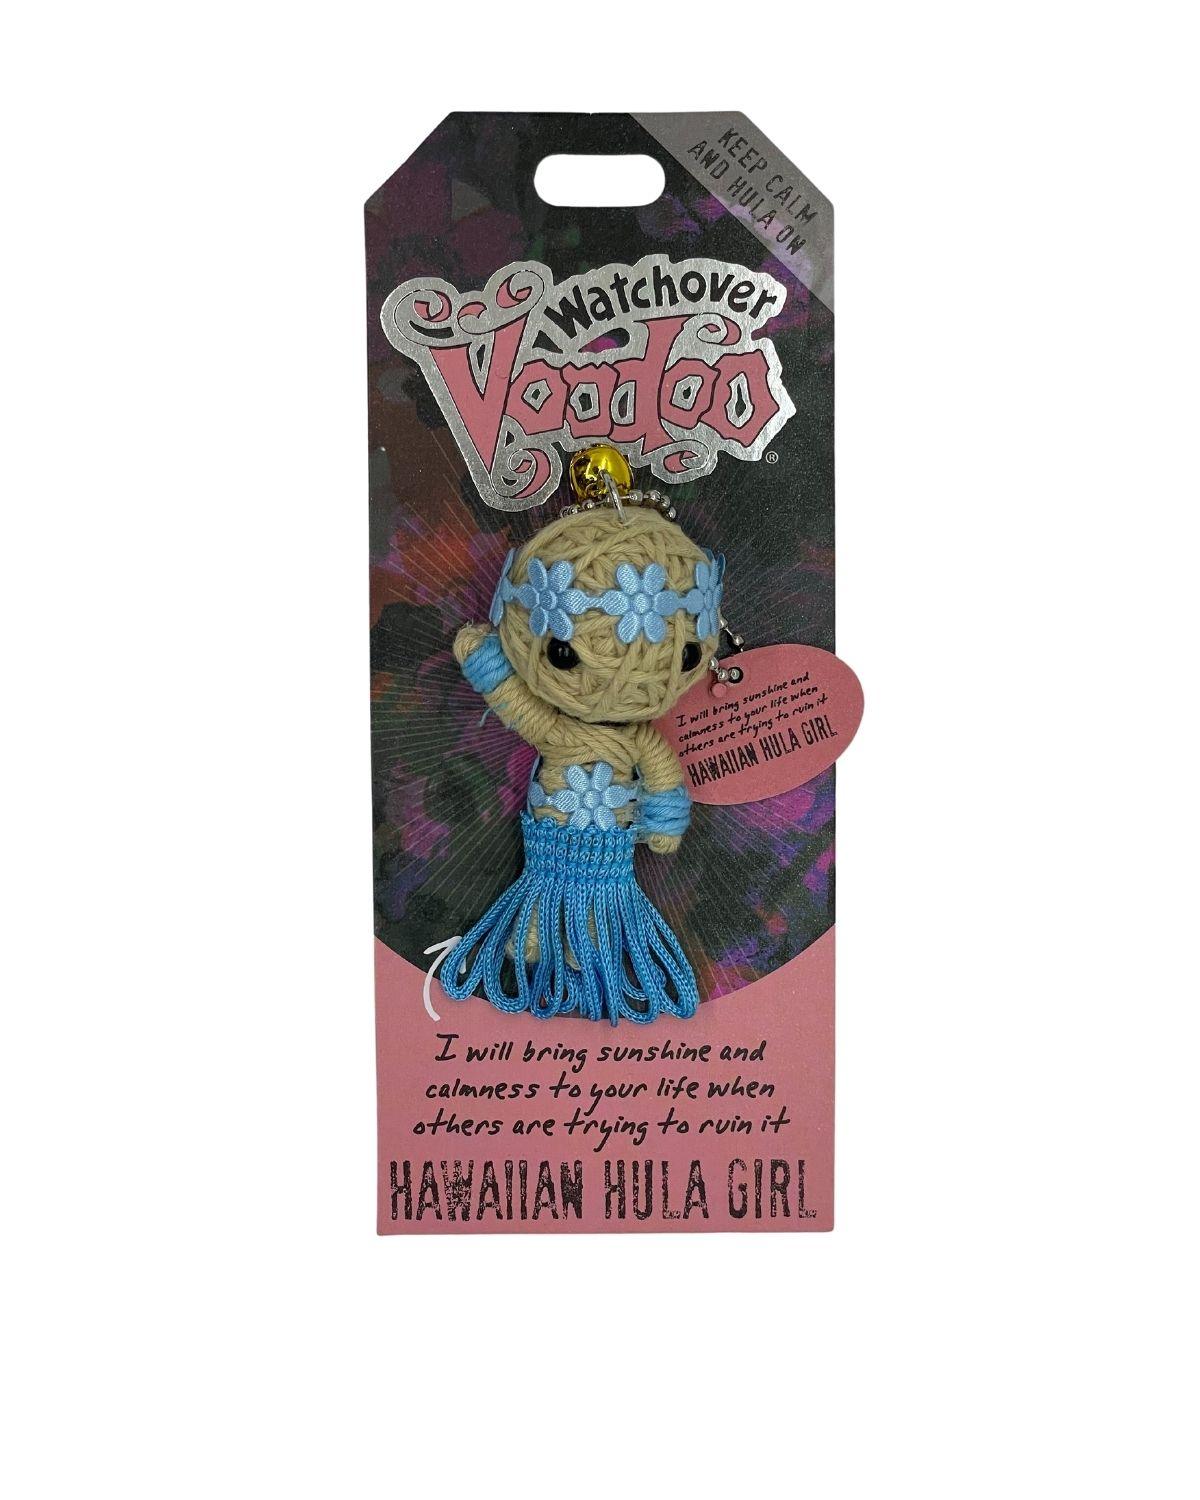 Watchover Voodoo Doll - Hawaiian Hula Girl - Watchover Voodoo - String Doll